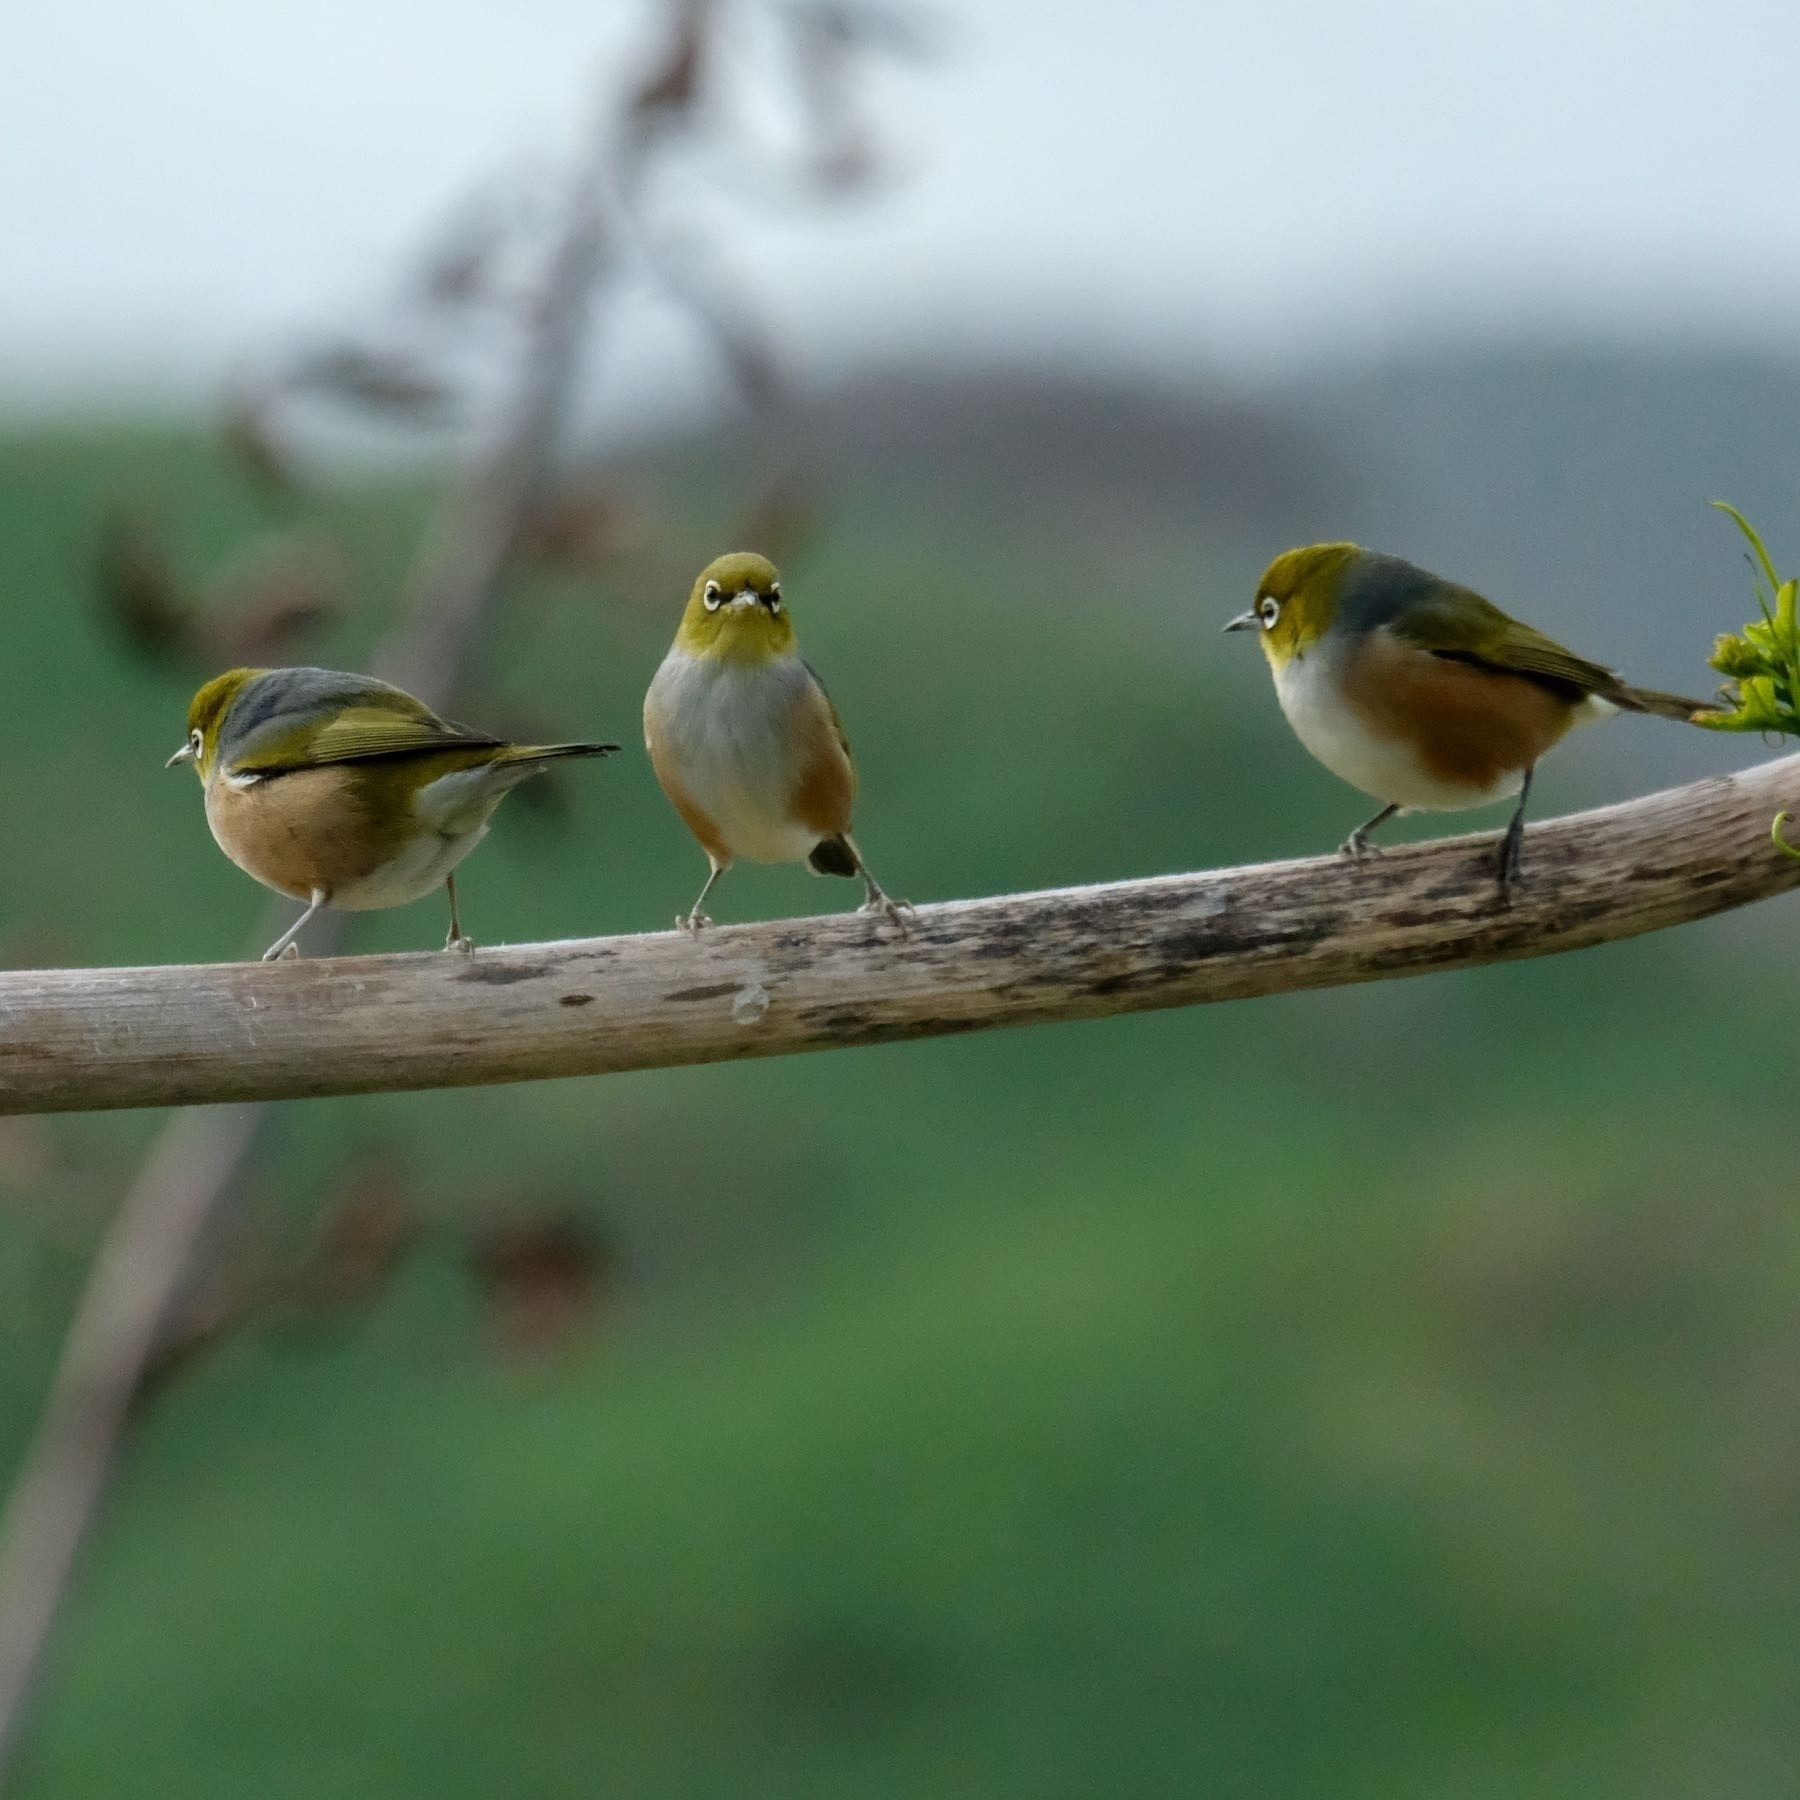 Three small birds on a horizontal pole. 